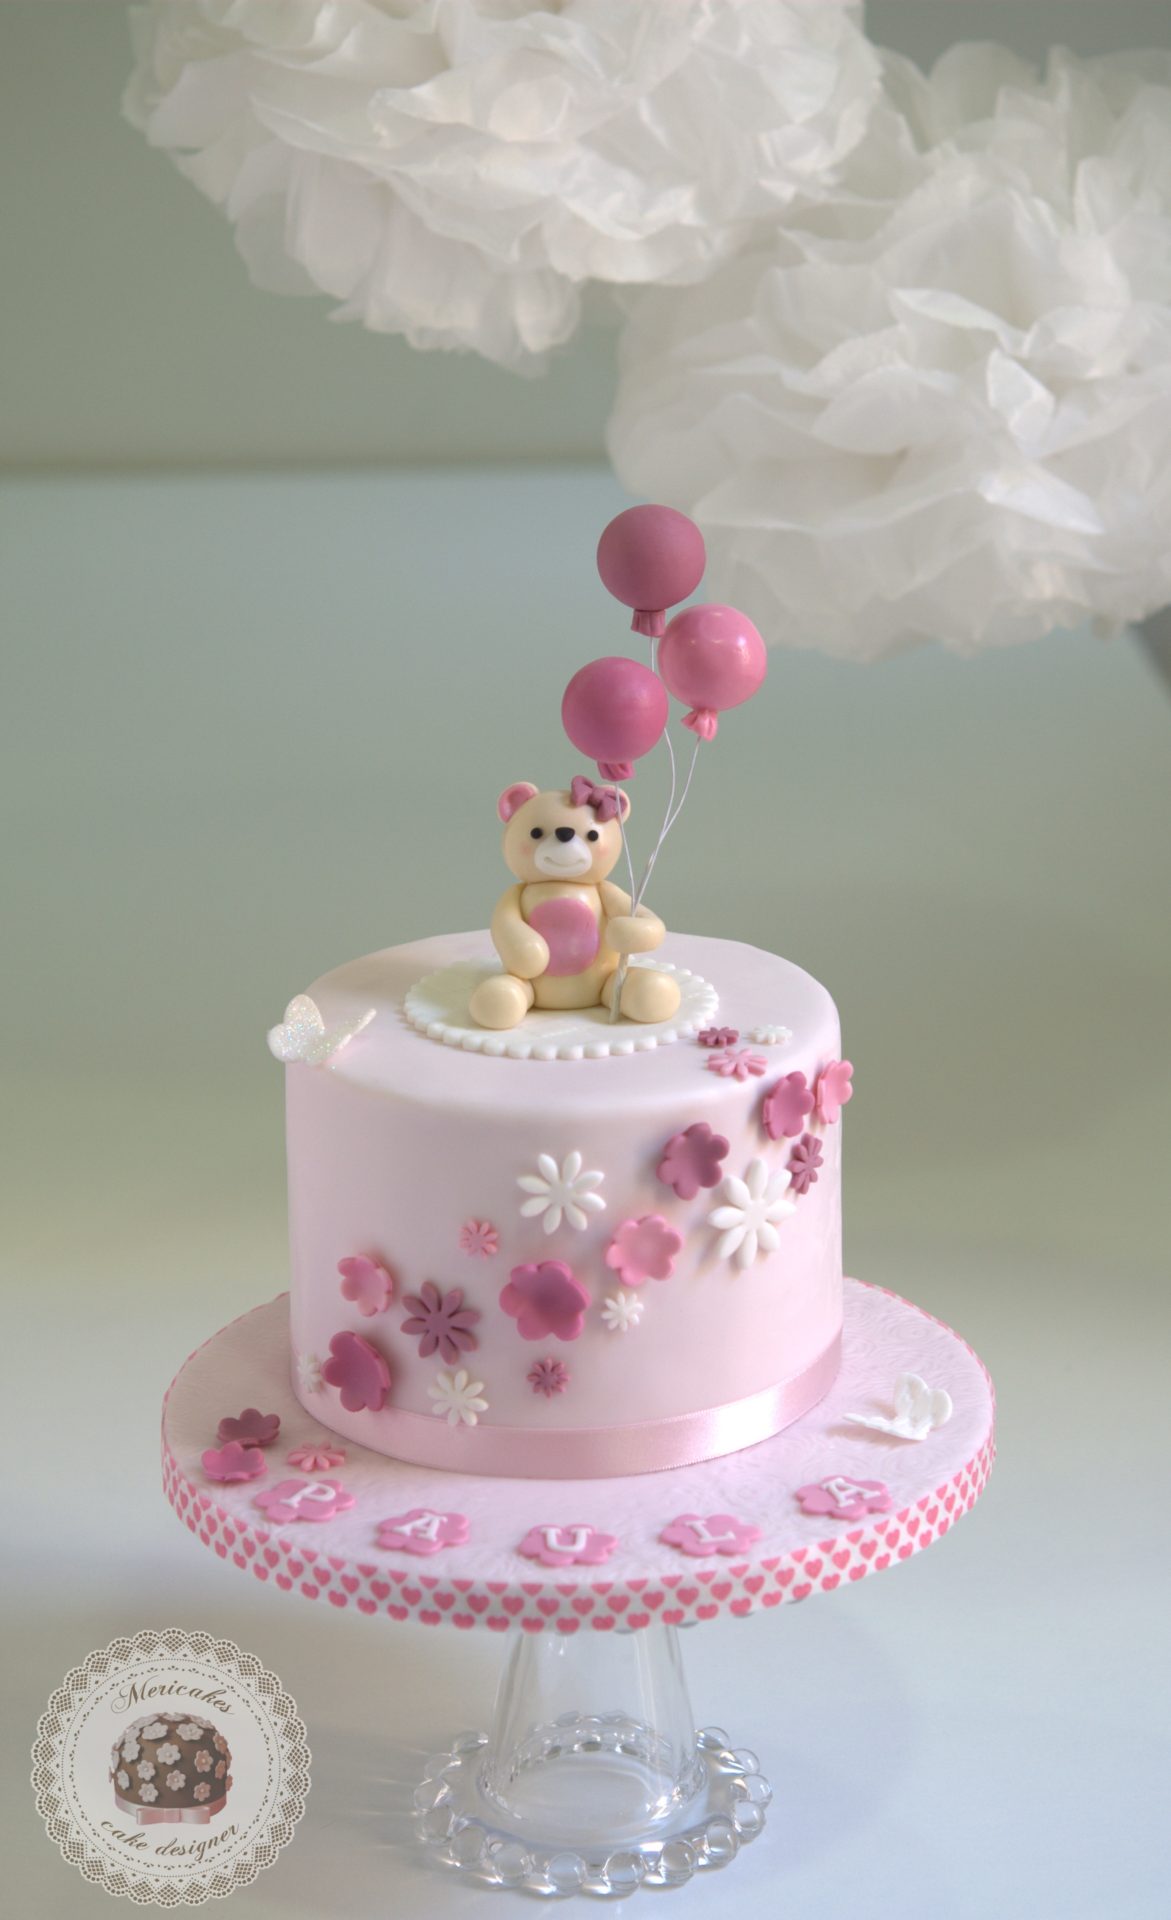 teddy-bear-christening-cake-tartas-barcelona-tartas-decoradas-osito-balloons-globos-bautizo-fondant-chocolate-mericakes-3